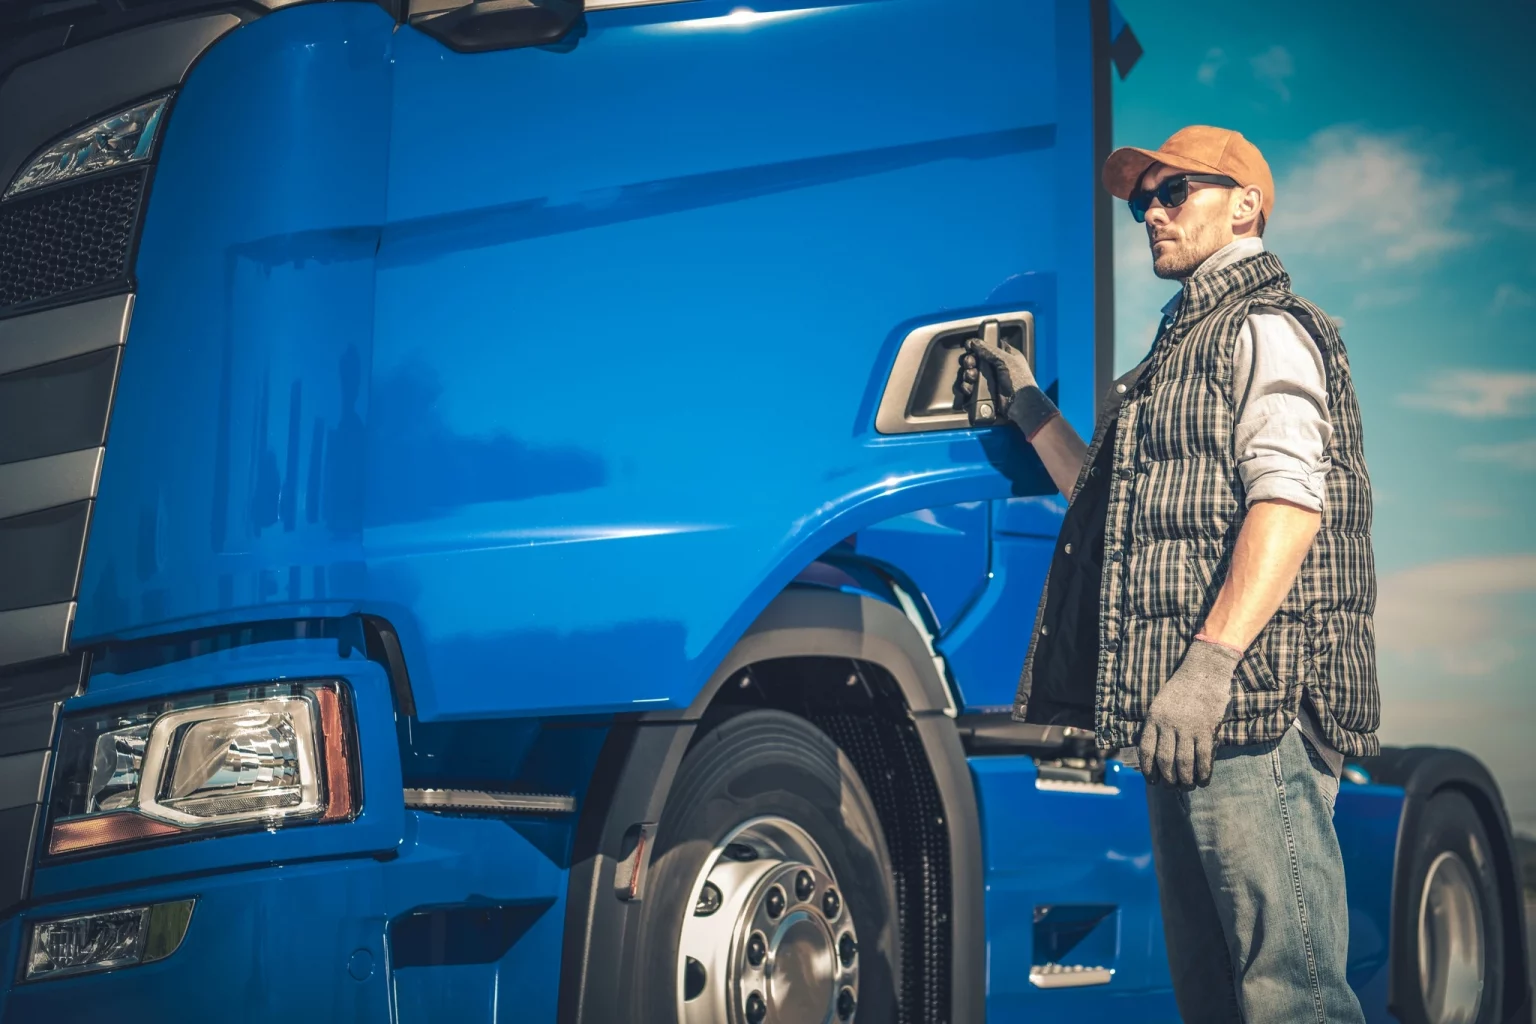 Transporteur professionnel à côté d'un camion bleu, mettant en avant les services dédiés aux conducteurs de poids lourds et à l'industrie du transport routier.